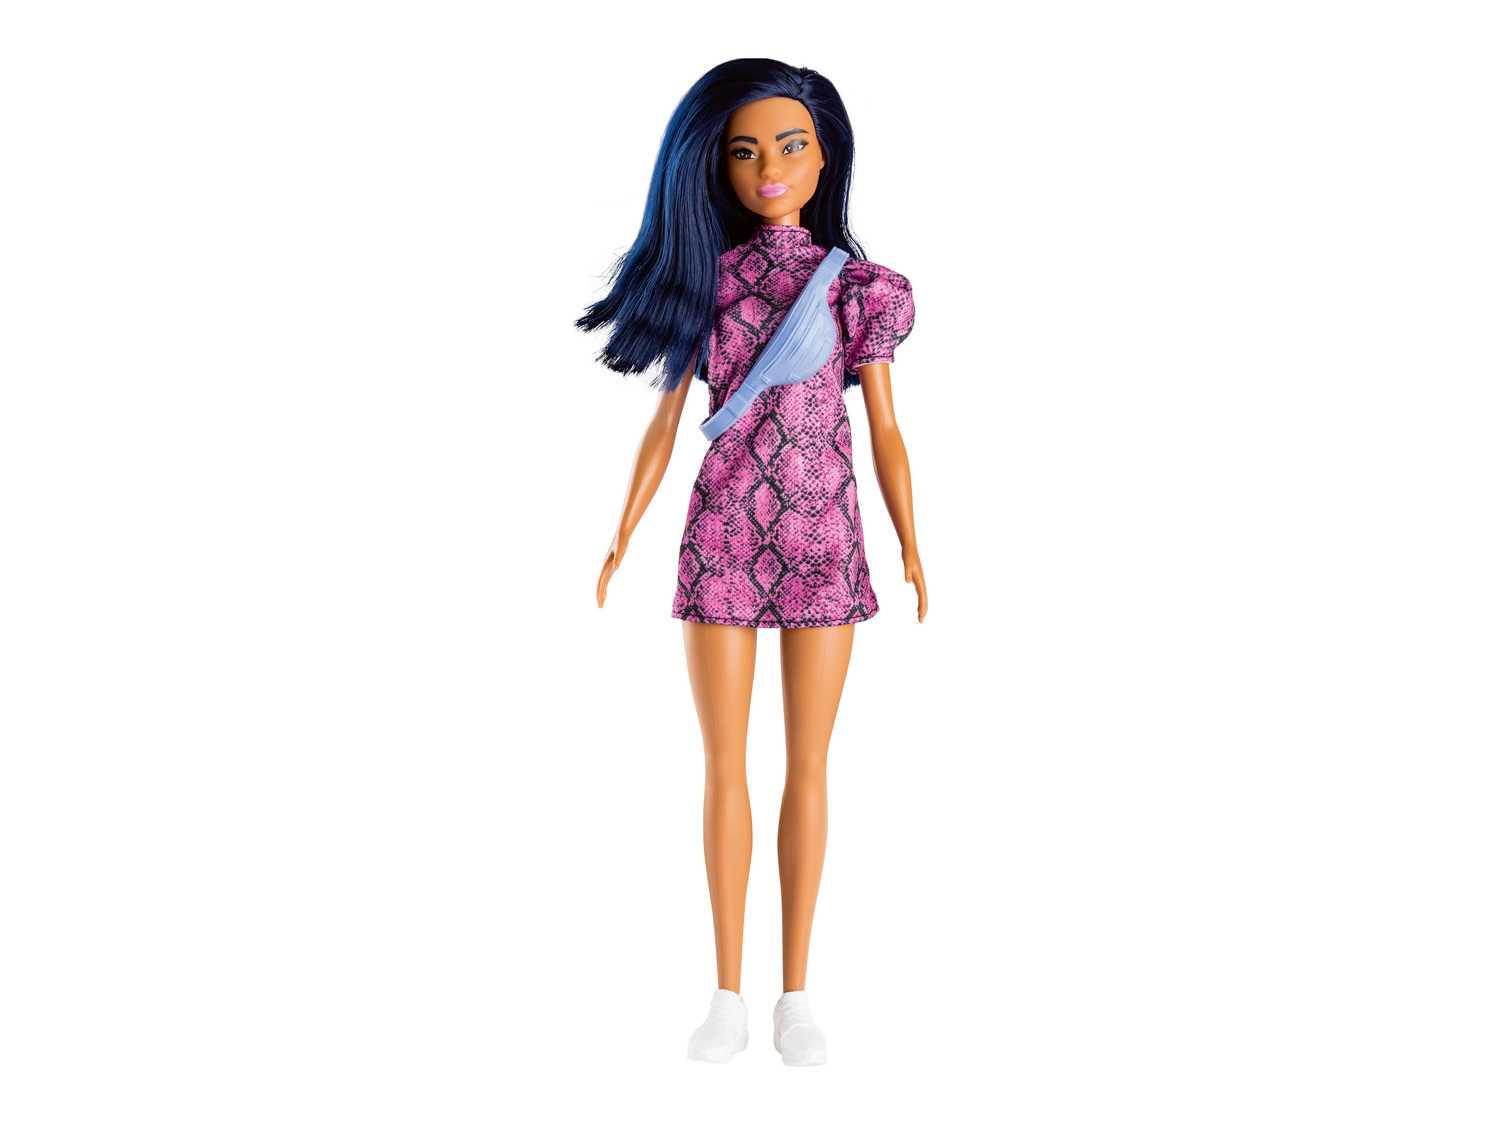 Giocattoli Barbie, prezzo 8.99 &#8364;  

Caratteristiche